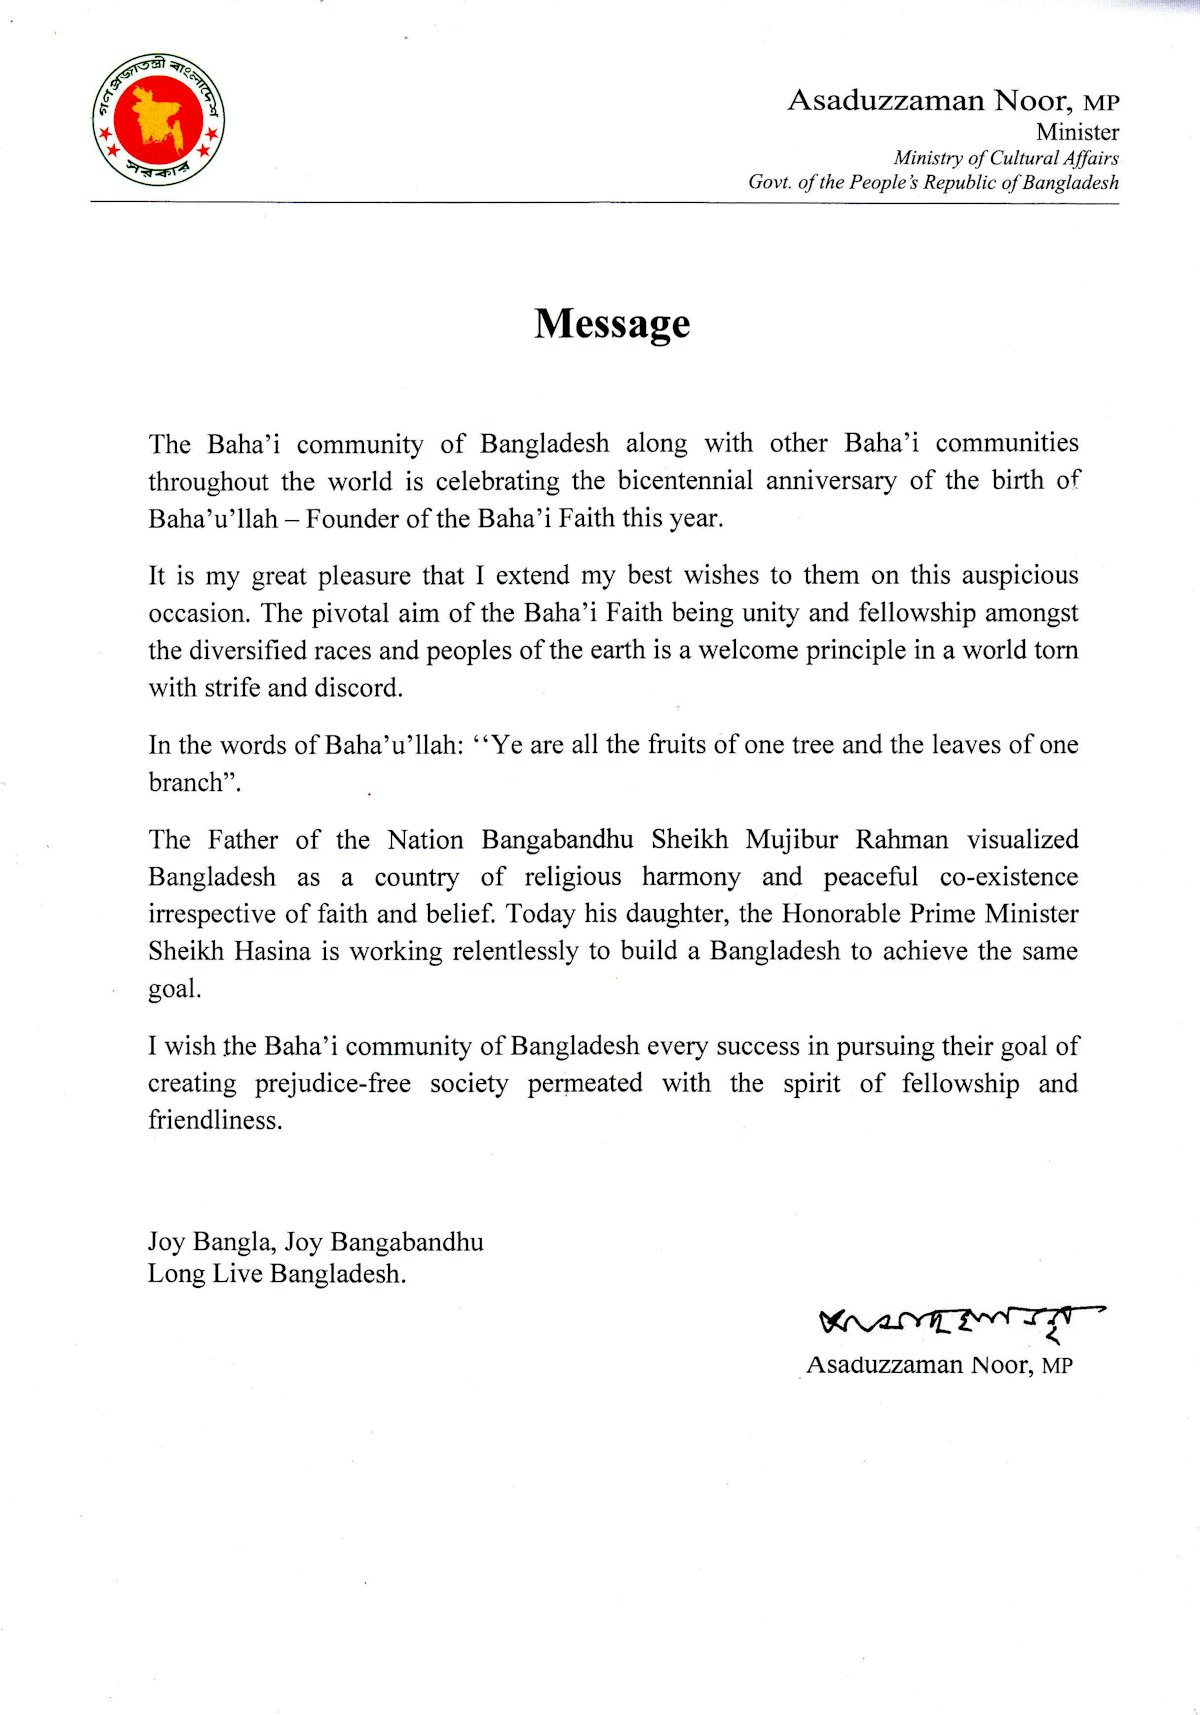 Un message adressé à la communauté bahá’íe par Asaduzzaman Noor, ministre des Affaires culturelles du Bangladesh.